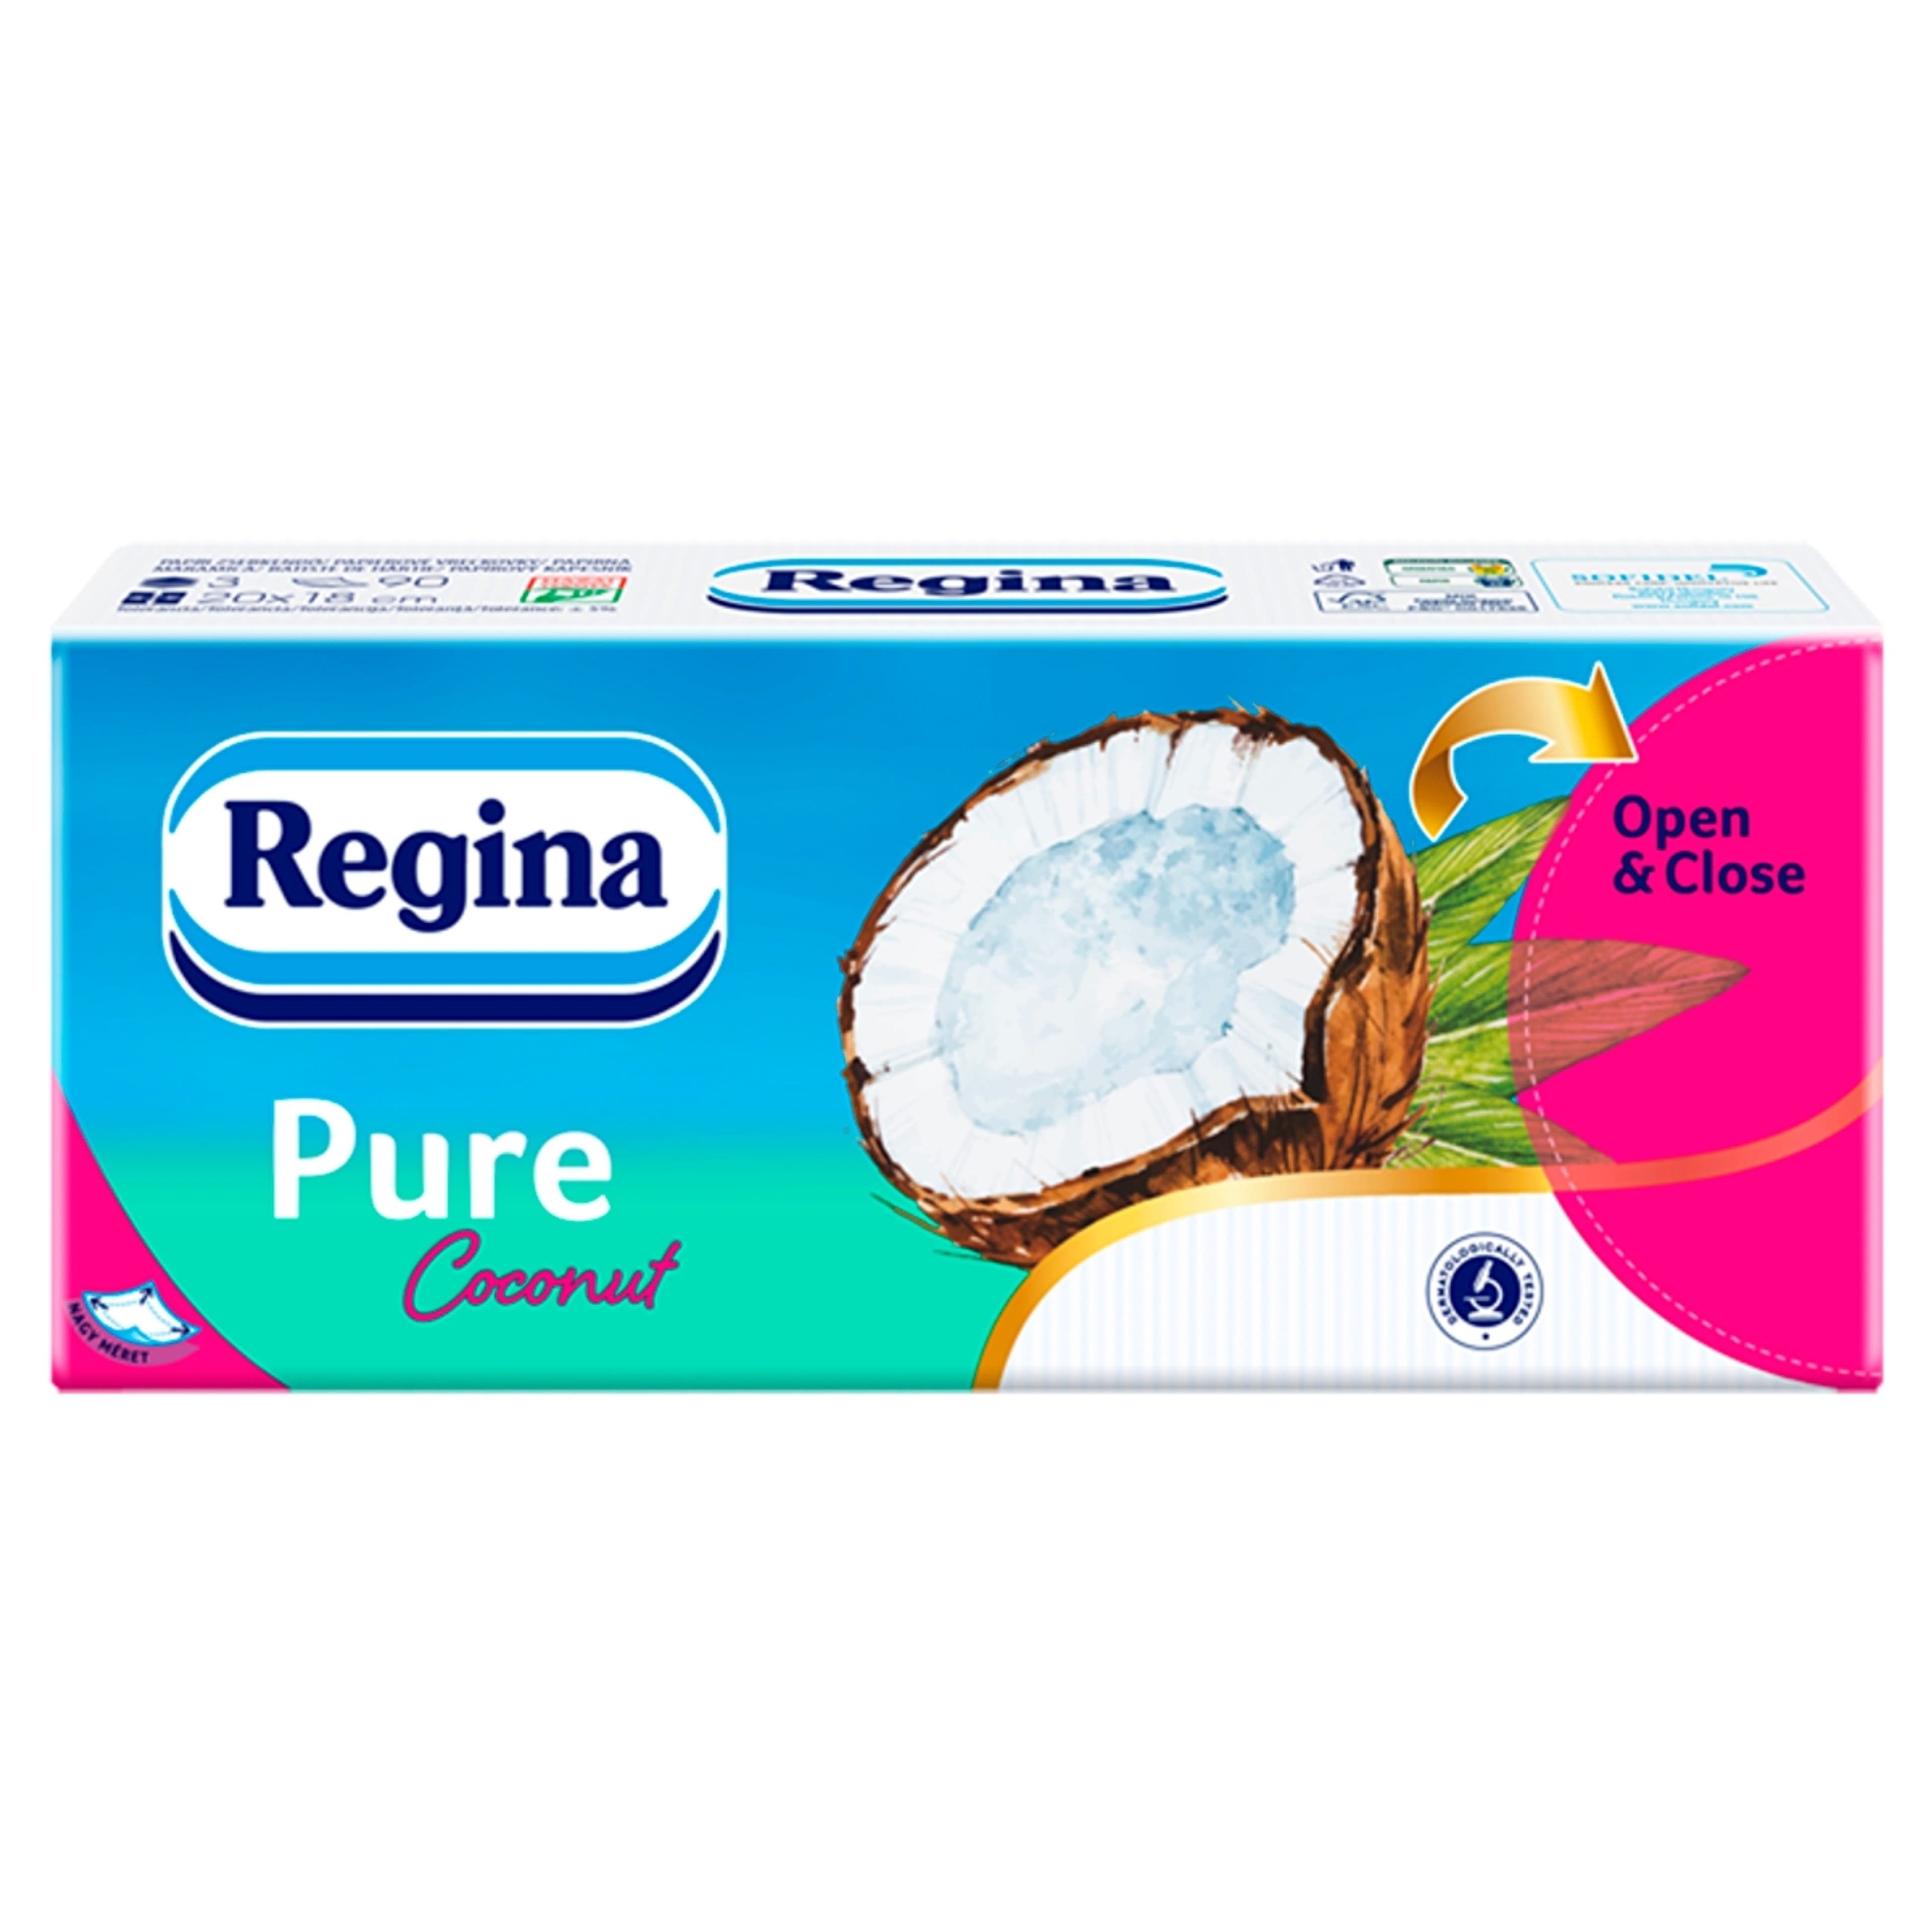 Regina papírzsebkendő pure coconut 3 rétegű - 1 db-1